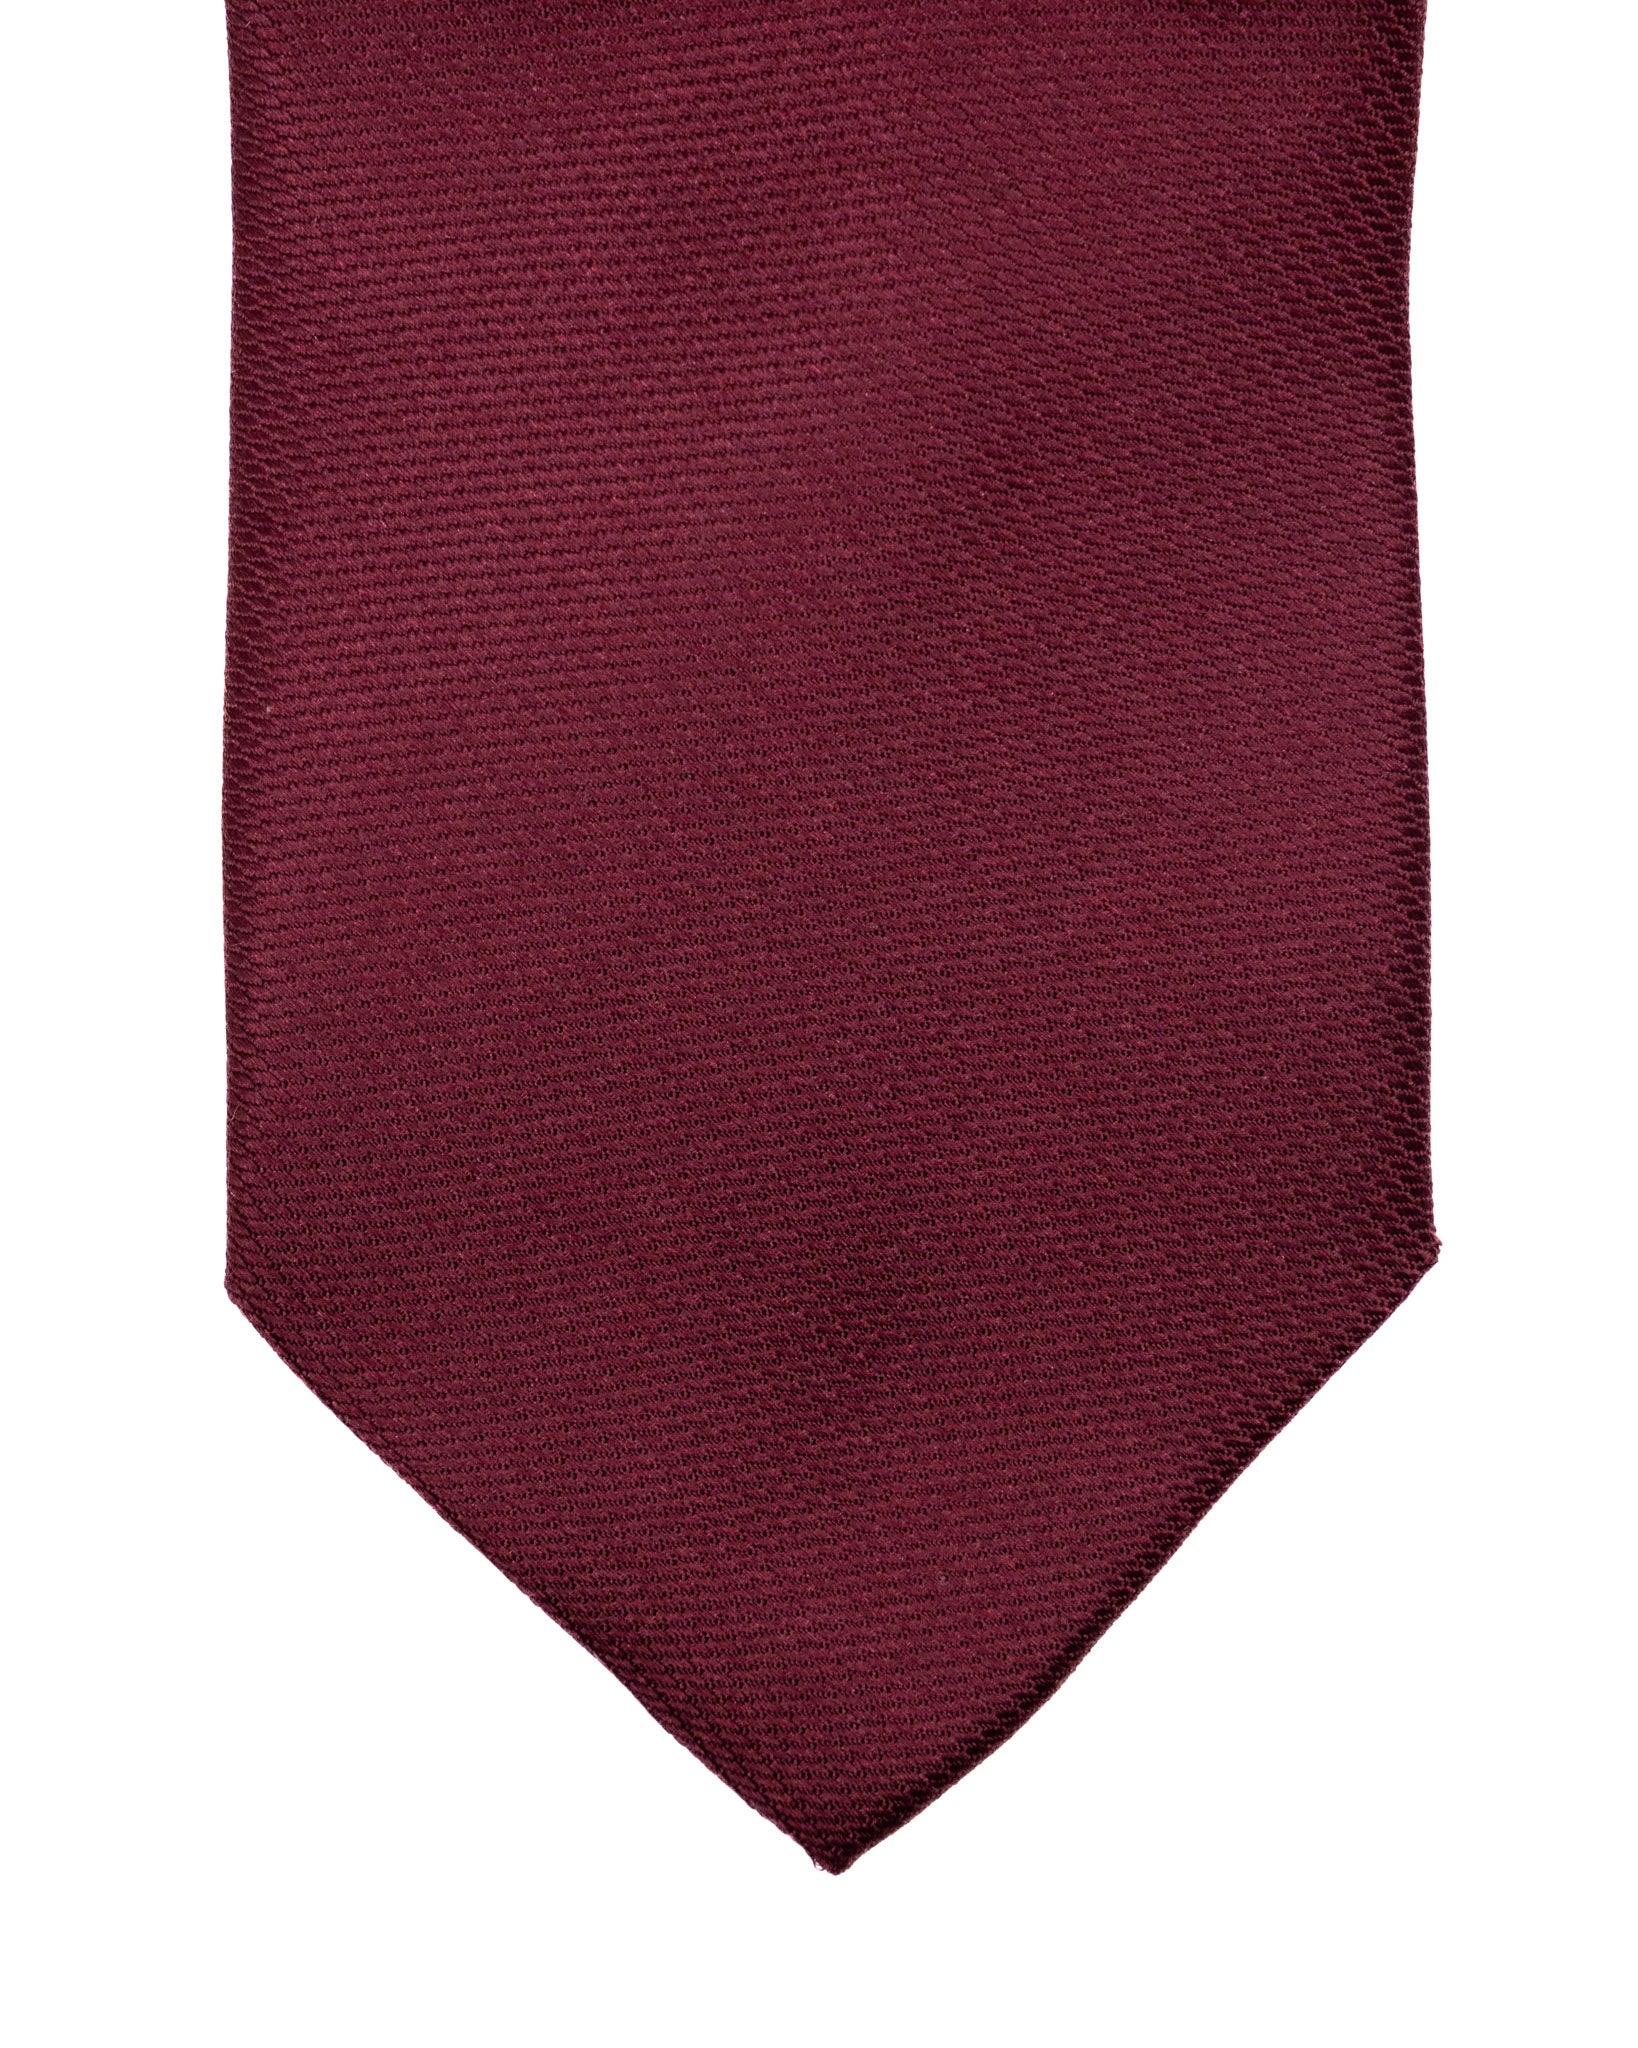 Tie - in burgundy woven silk